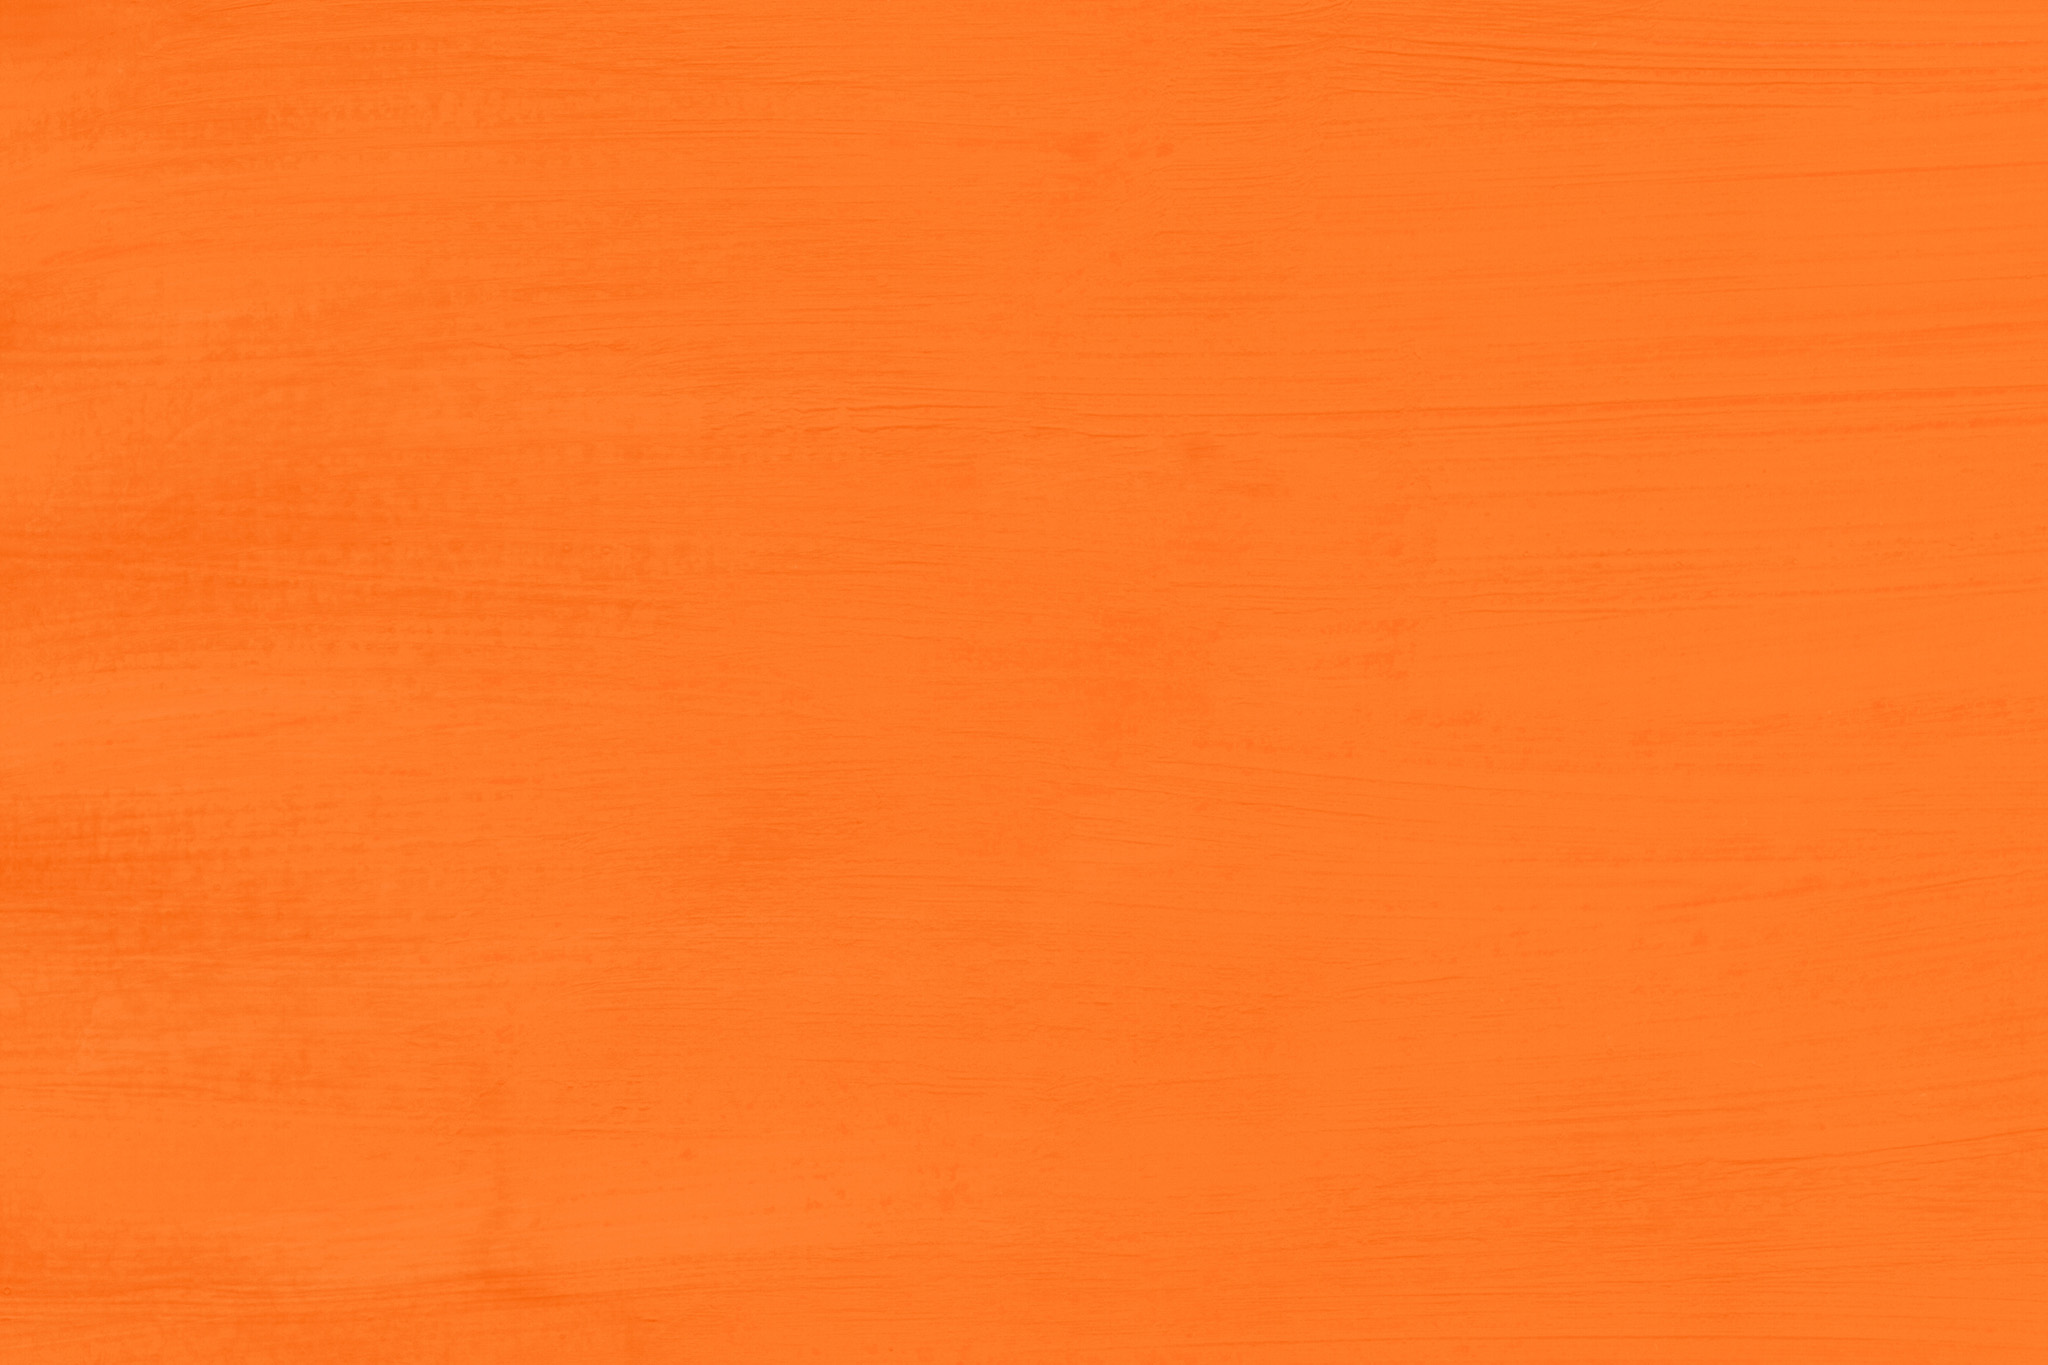 クールなオレンジ色の無地の壁紙 の画像素材を無料ダウンロード 1 フリー素材 Beiz Images